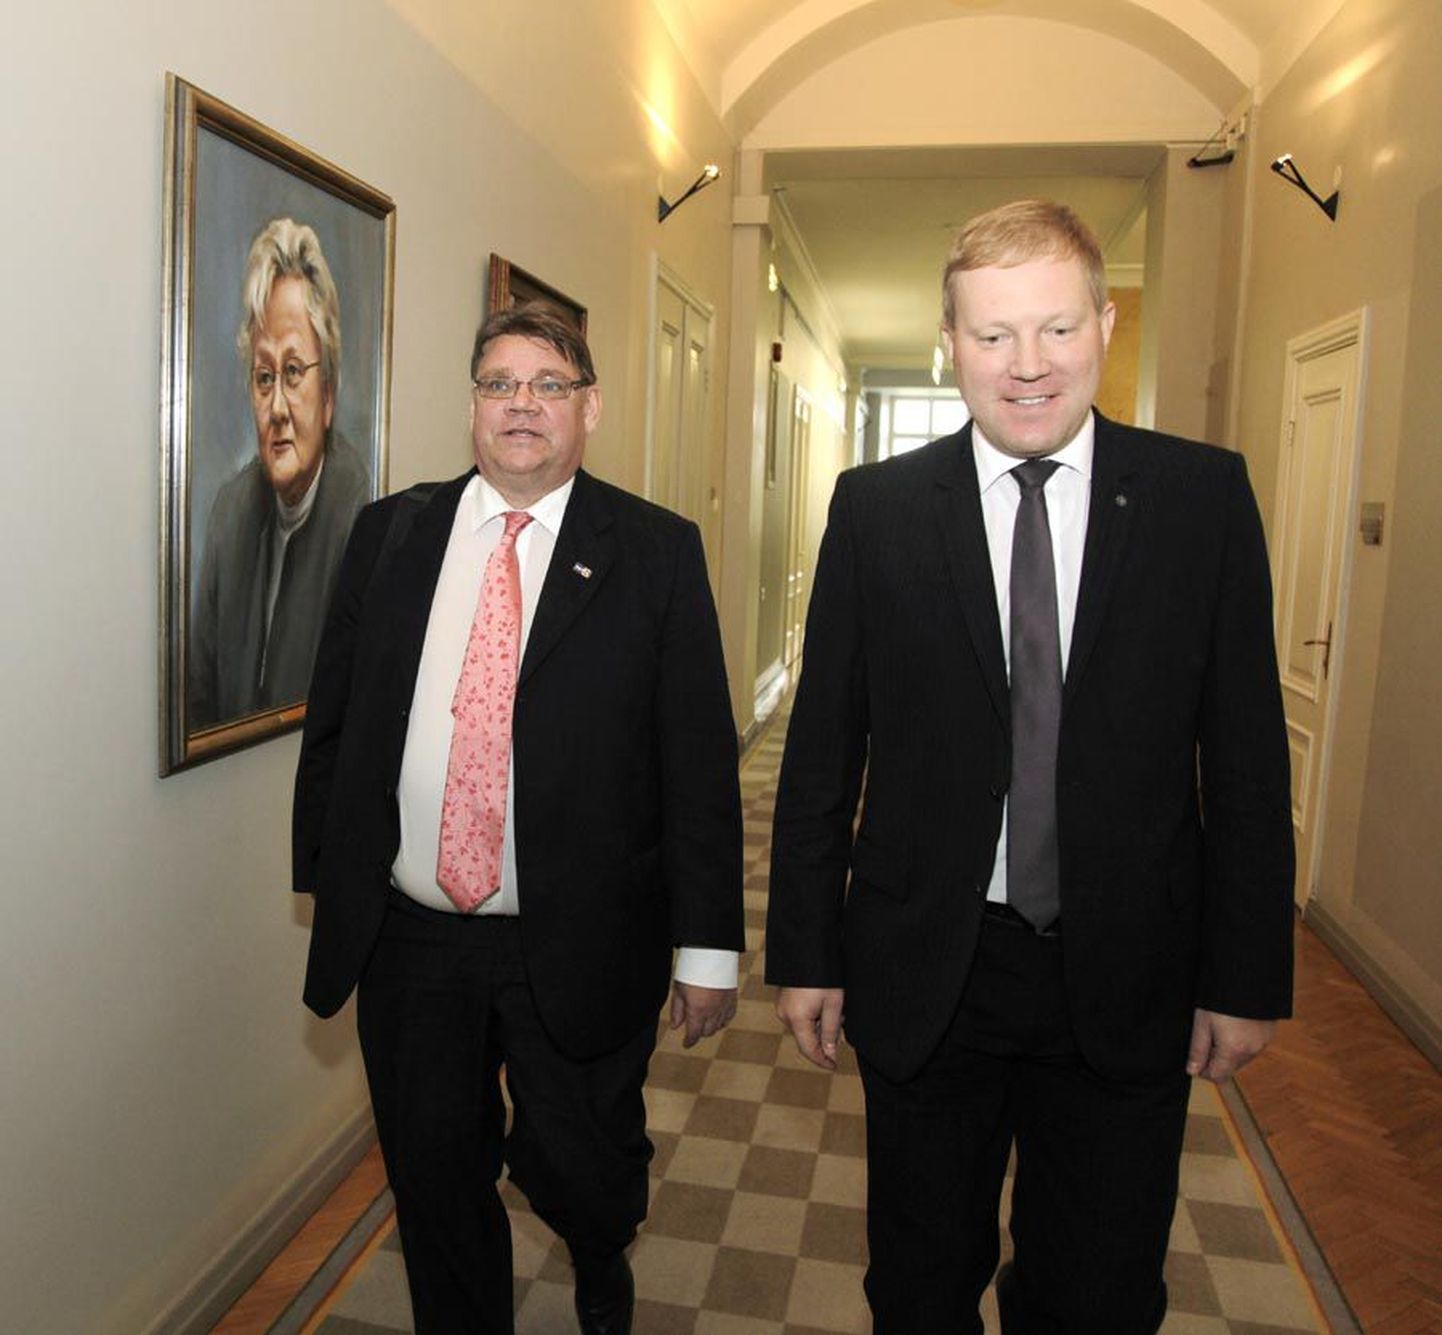 Soome parlamendi väliskomisjoni esimees Timo Soini (vasakul) eile riigikogus oma Eesti ametivenna Marko Mihkelsoniga.